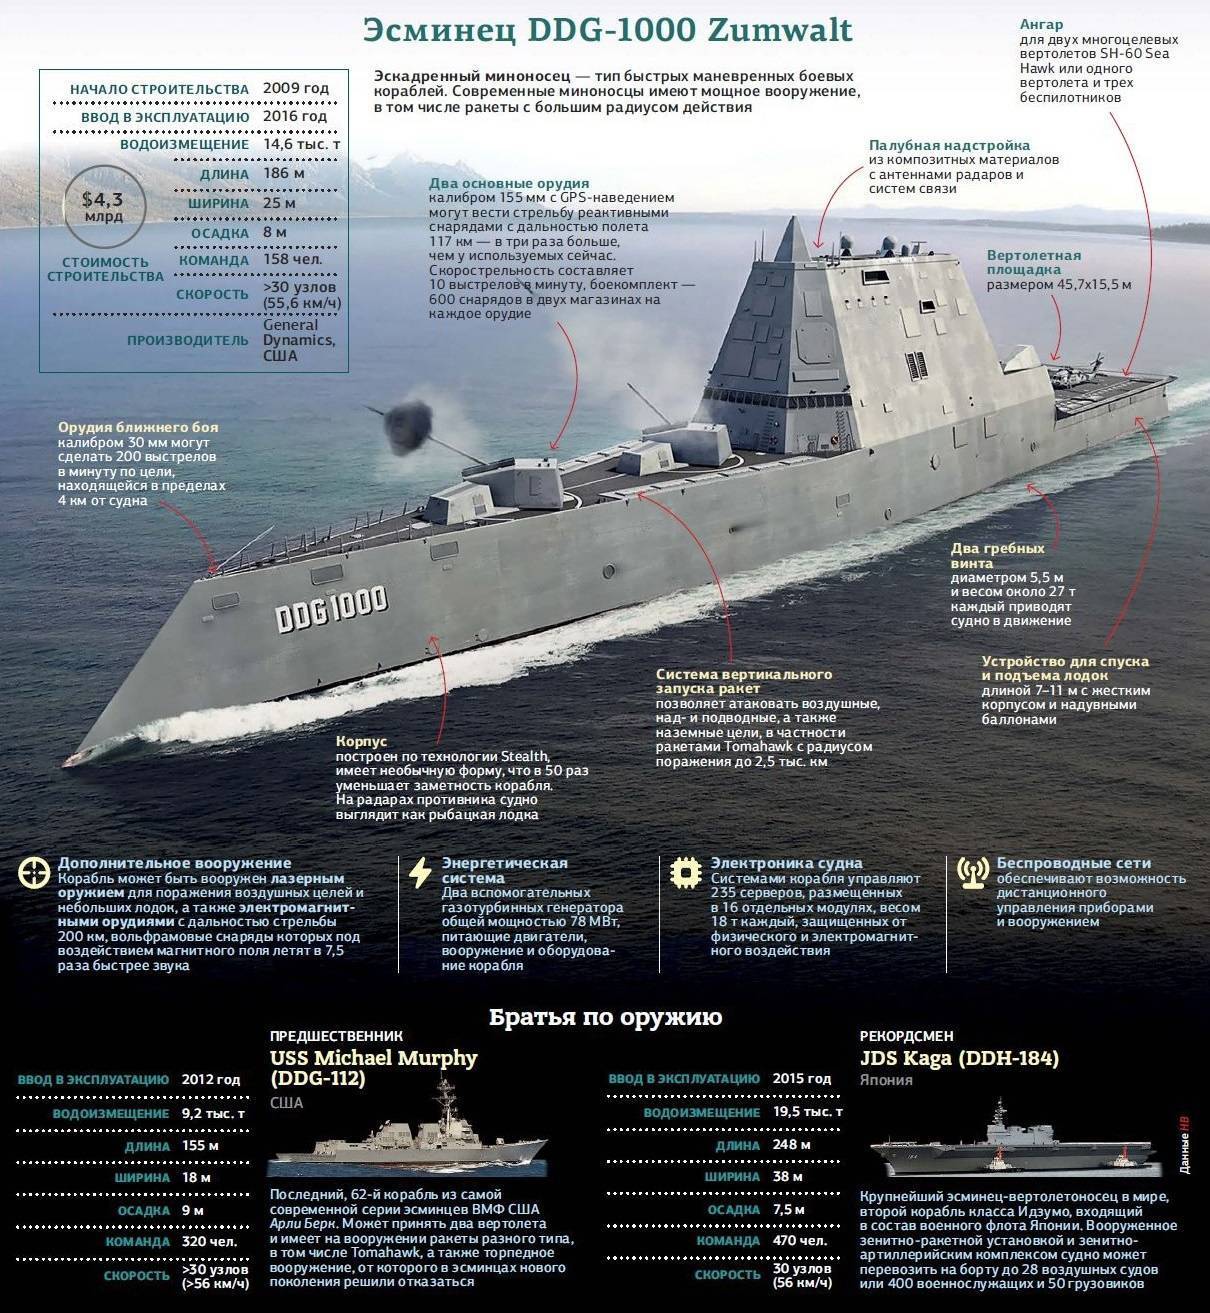 Вспомогательные корабли и суда вмф россии